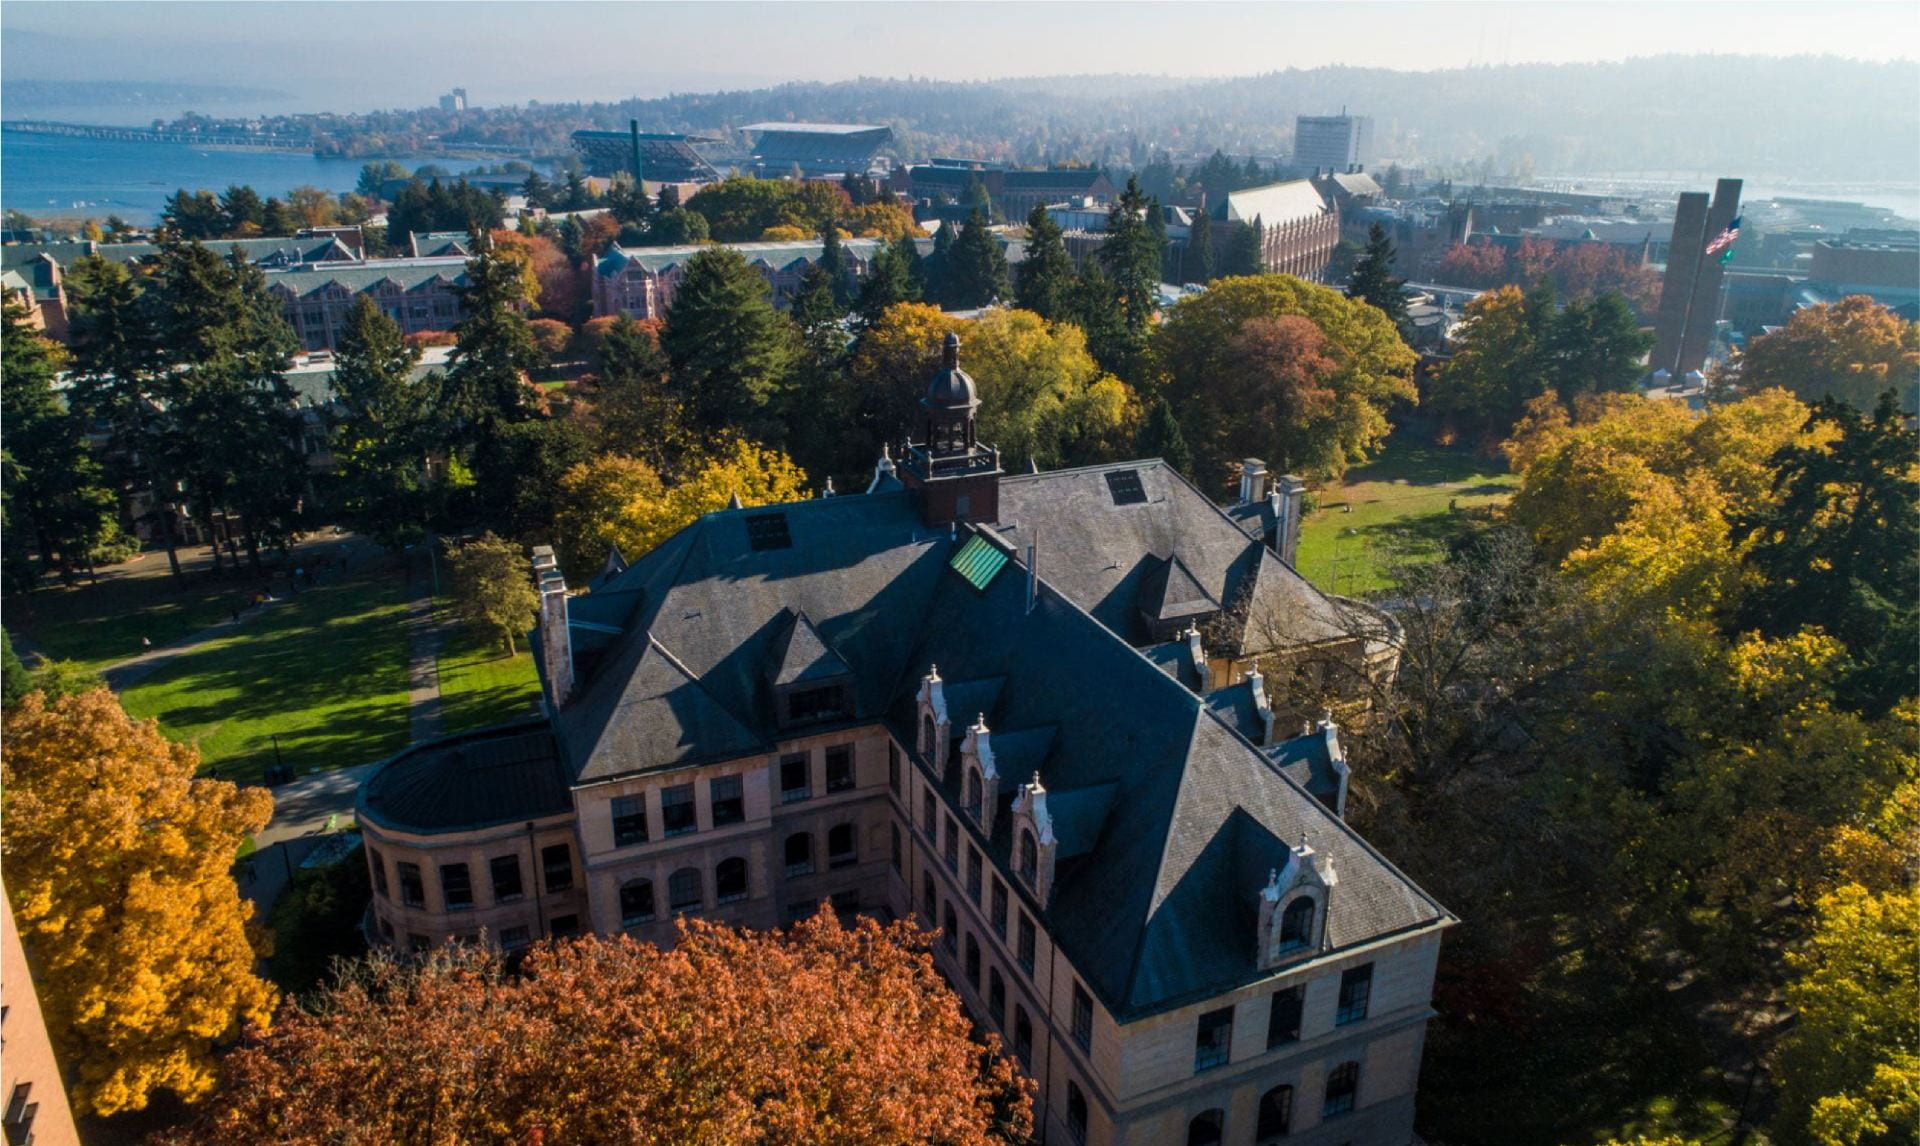 Be Boundless at the University of Washington